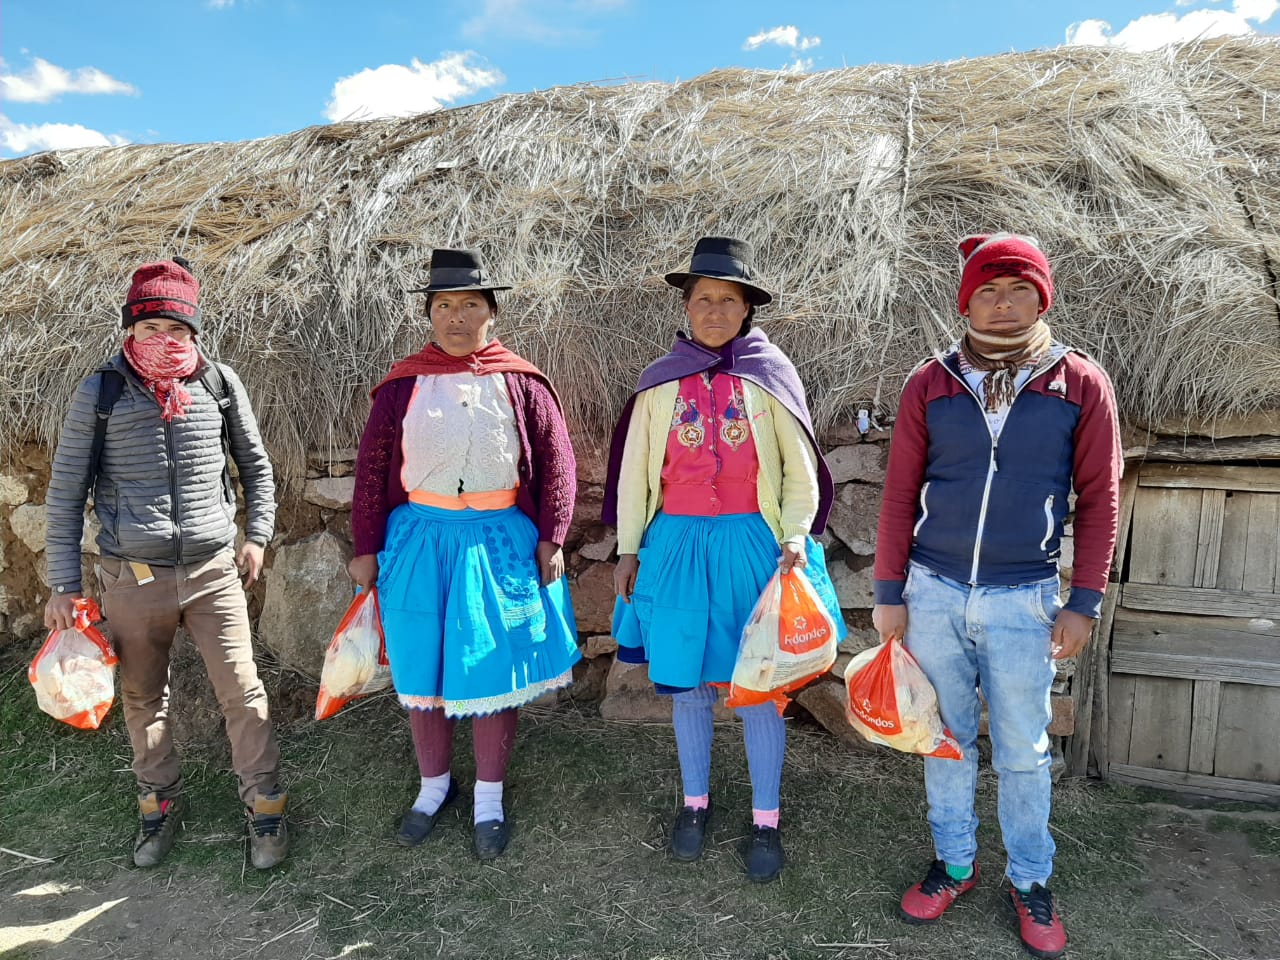 Platos que alimentan Esperanzas: La campaña del Banco de Alimentos que busca llevar un millón de raciones de comida a los más necesitados del Perú